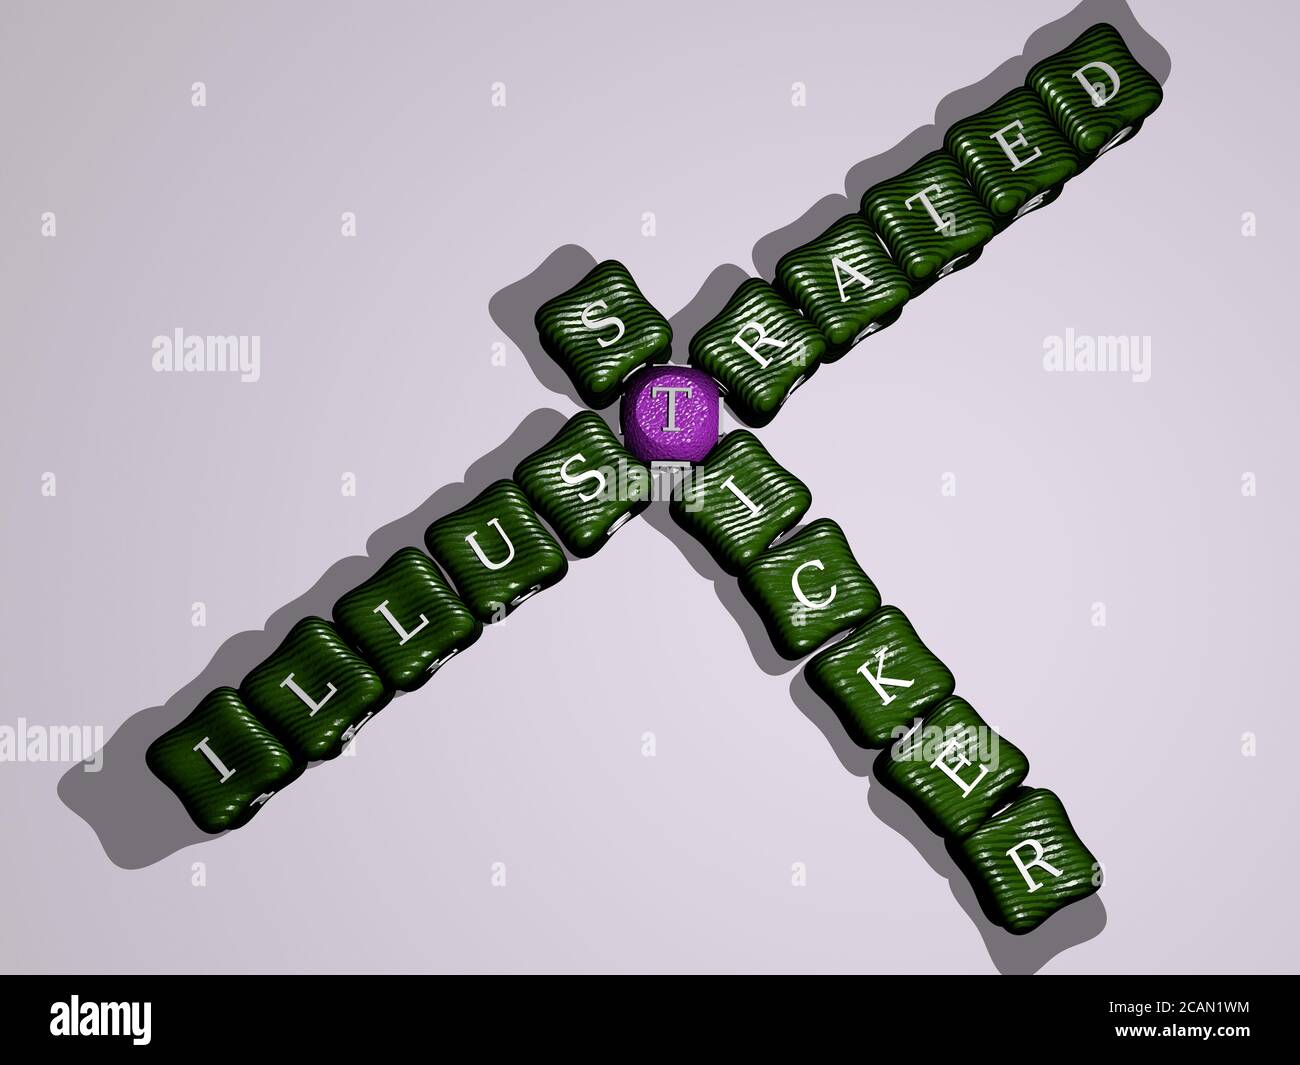 Illustrierte Aufkleber Kreuzworträtsel von bunten kubischen Buchstaben - 3D-Illustration Für Hintergrund und Abstract Stockfoto